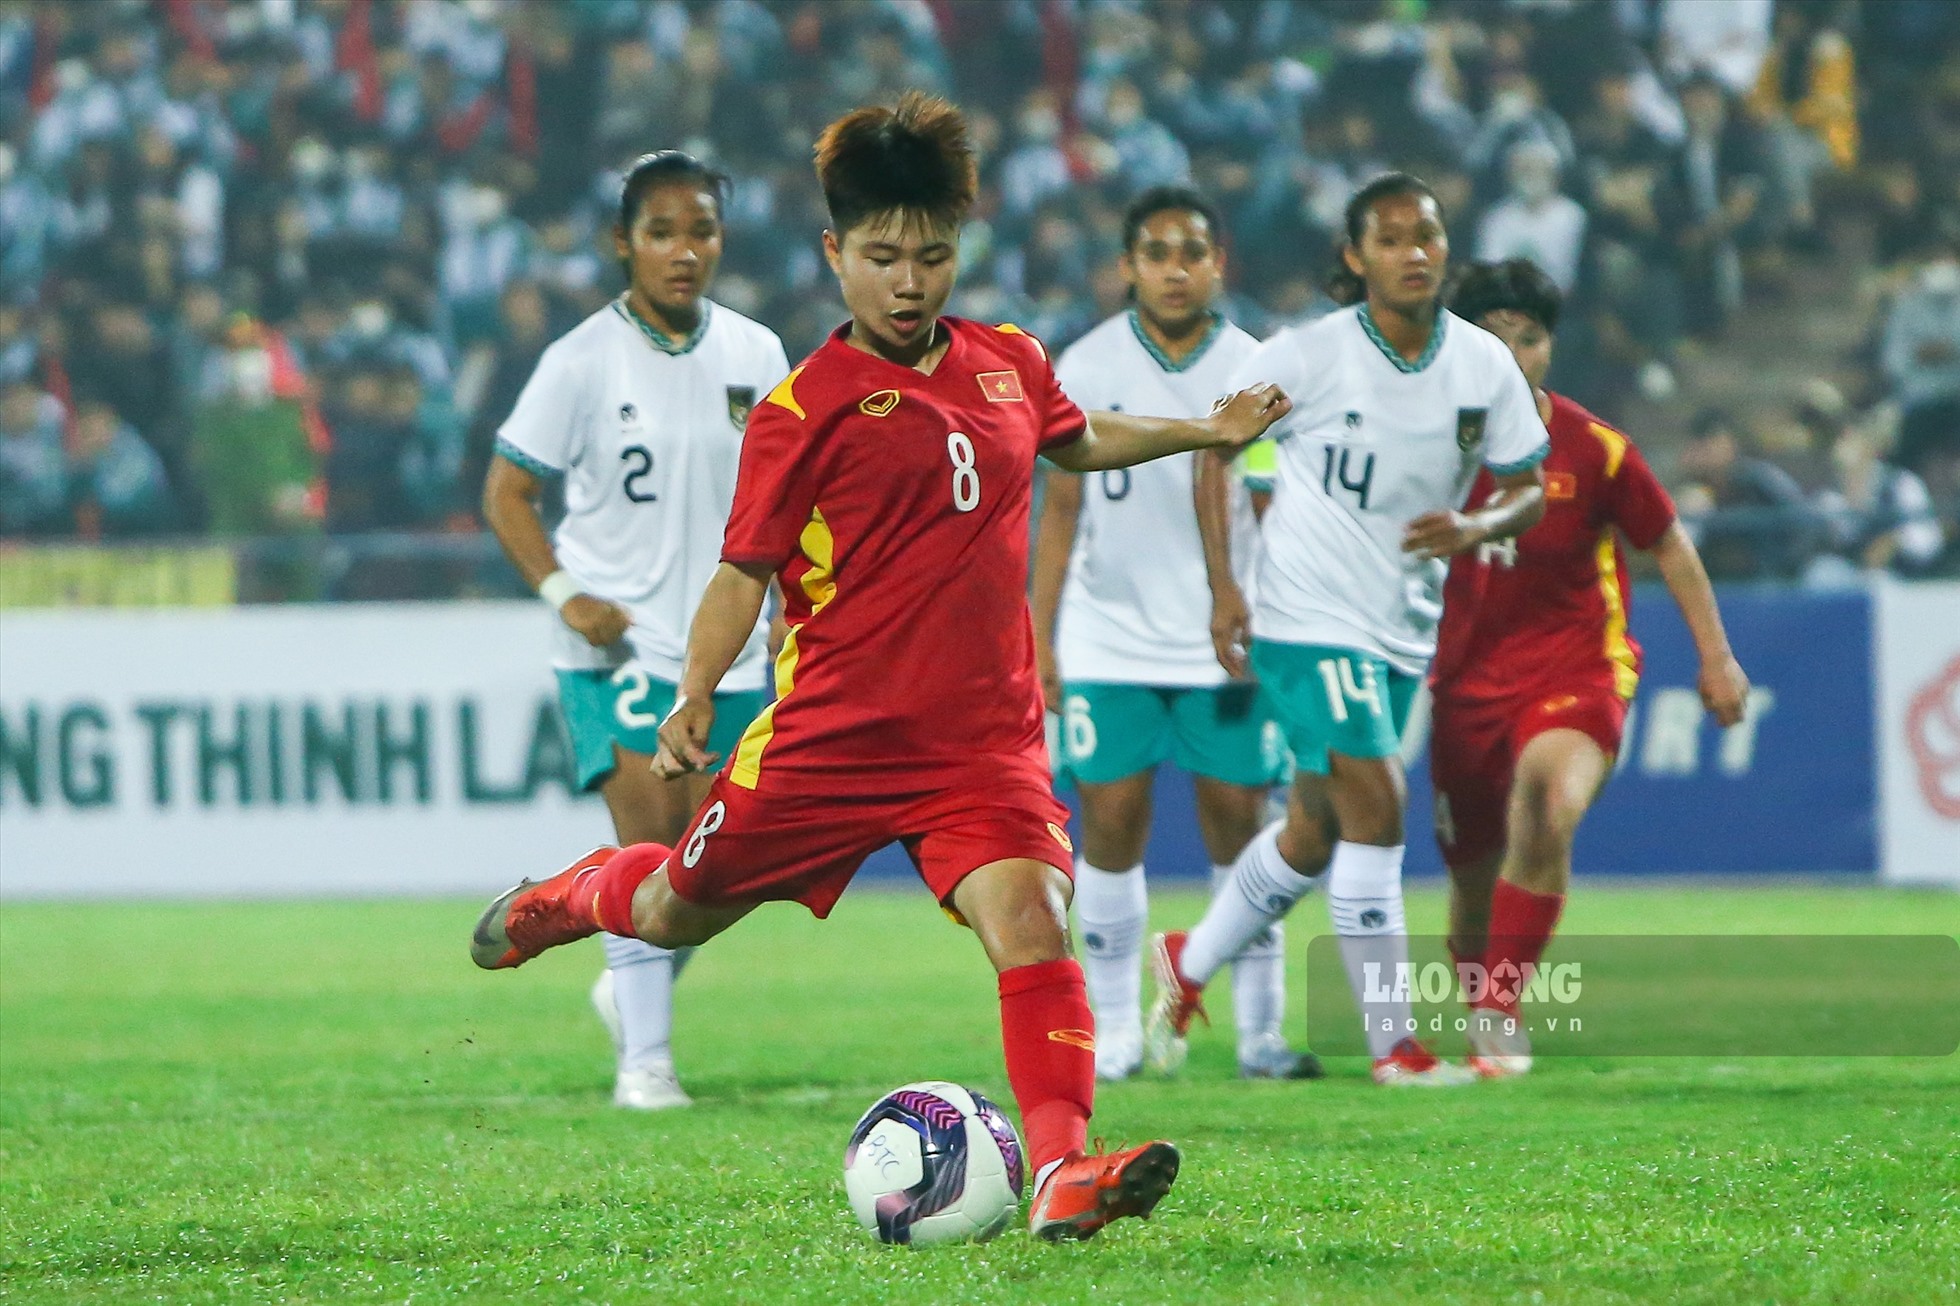 Đội tuyển U20 nữ Việt Nam tạo ra thế trận áp đảo trước U20 nữ Indonesia. Ảnh: Minh Quân